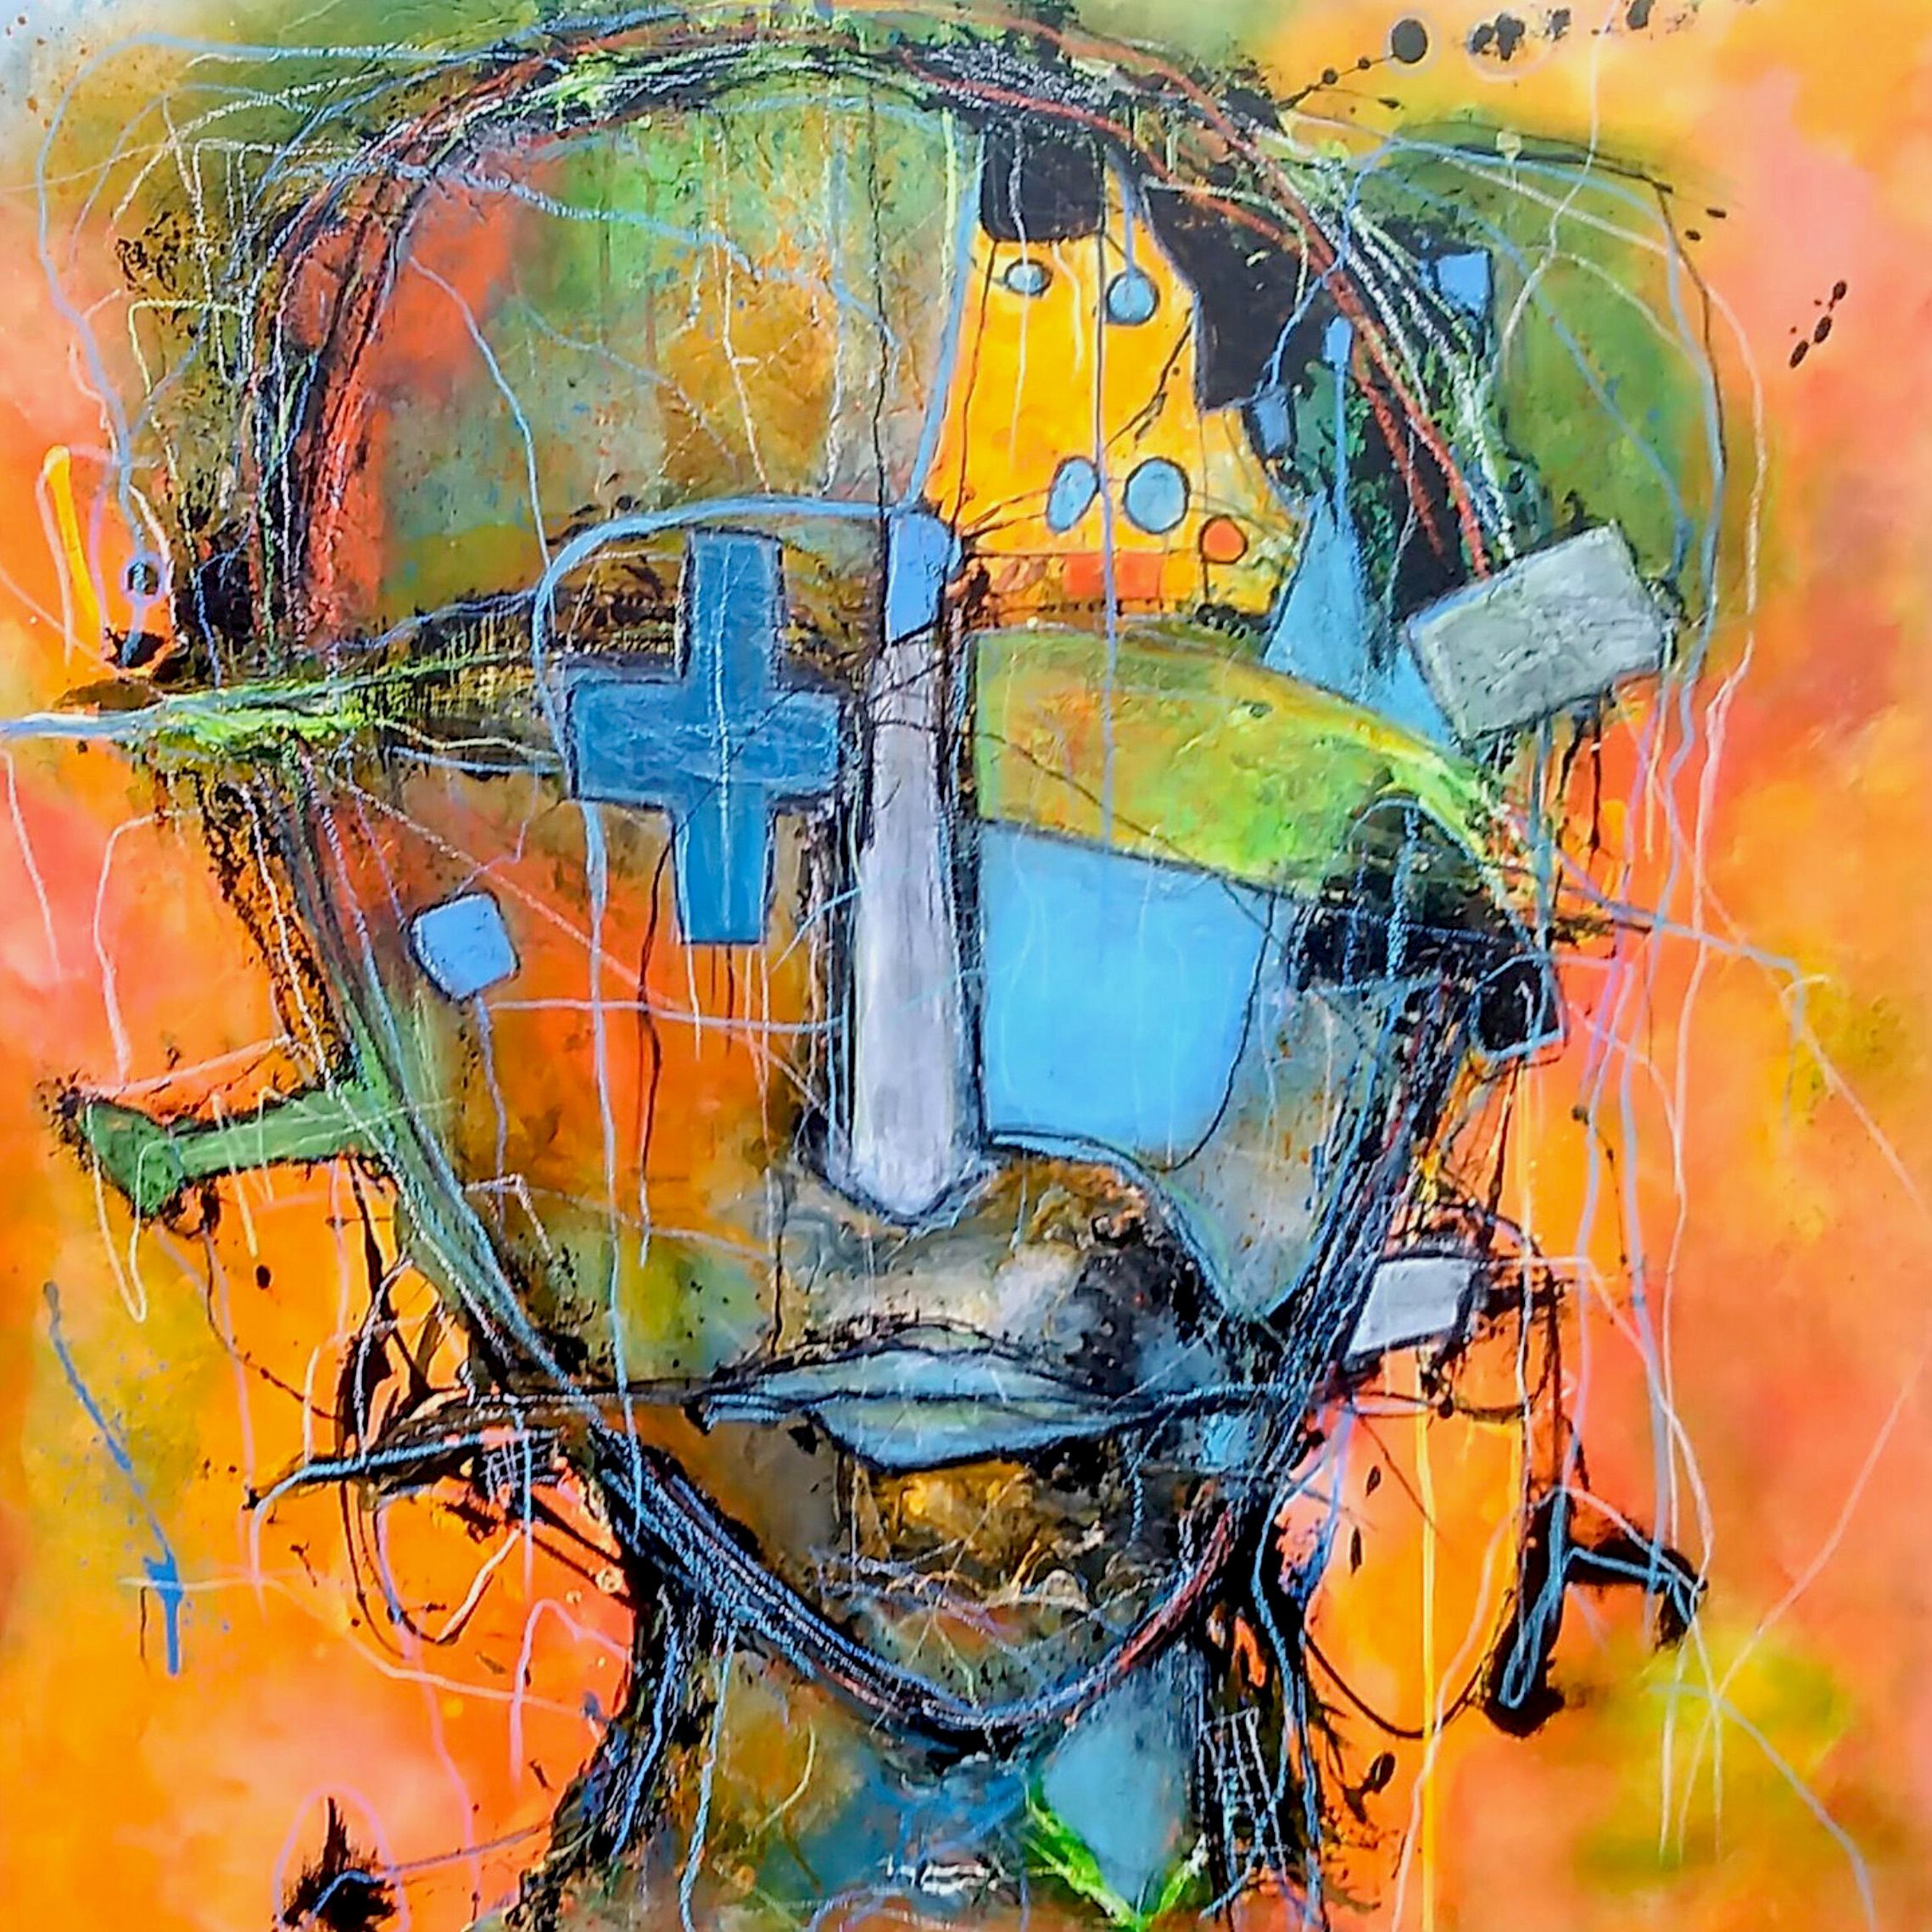 El retrato semiabstracto "Freigeist" de Ilona Schmidt muestra a una persona o un rostro. La paleta de colores del cuadro se compone de diferentes tonos de azul, amarillo y naranja y rojo, que se mezclan armoniosamente.